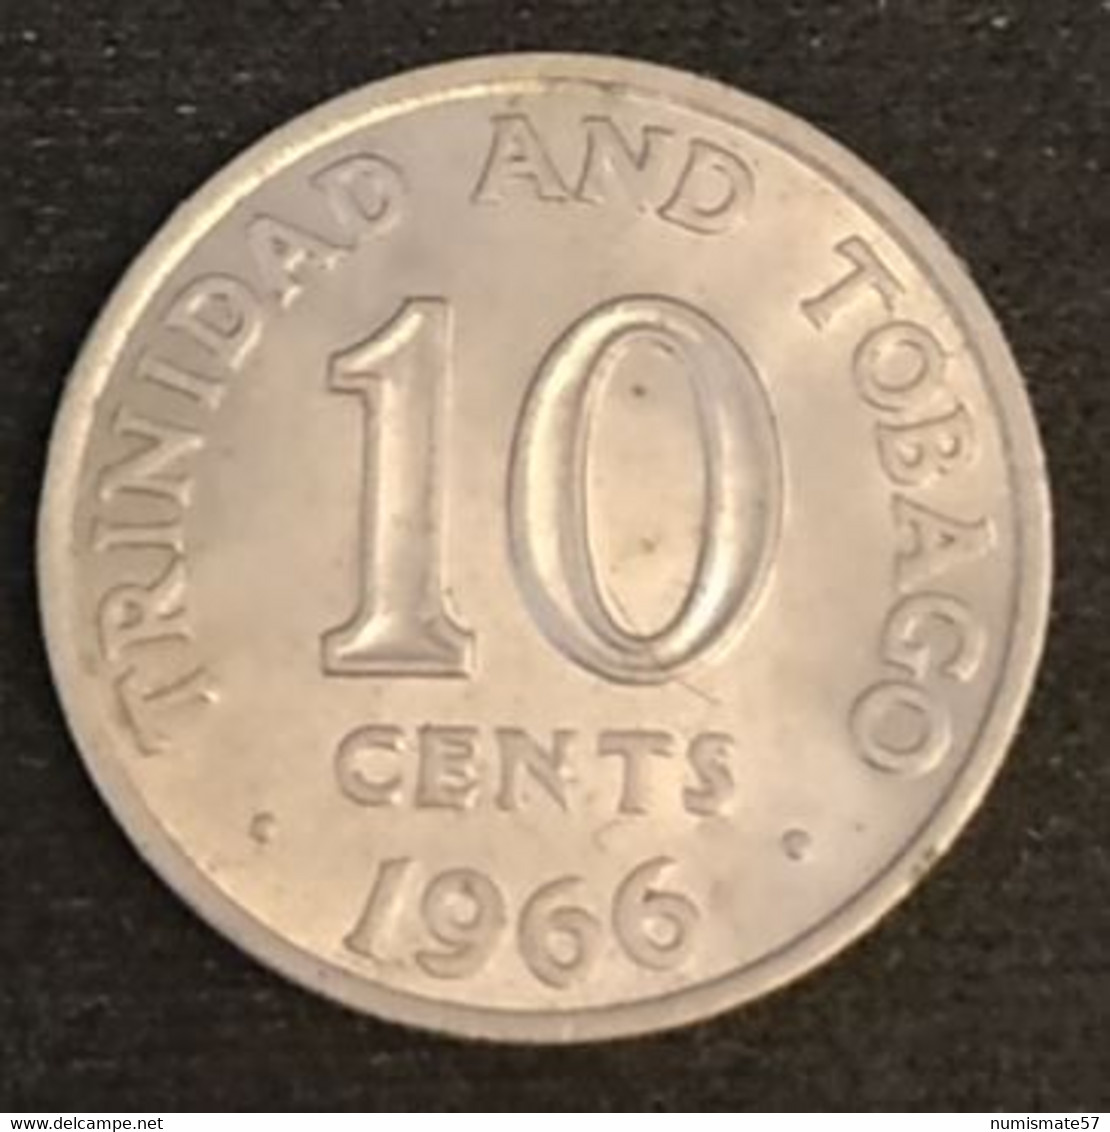 TRINIDAD AND TOBAGO - 10 CENTS 1966 - KM 3 - Trinité-et-Tobago - Trinidad & Tobago